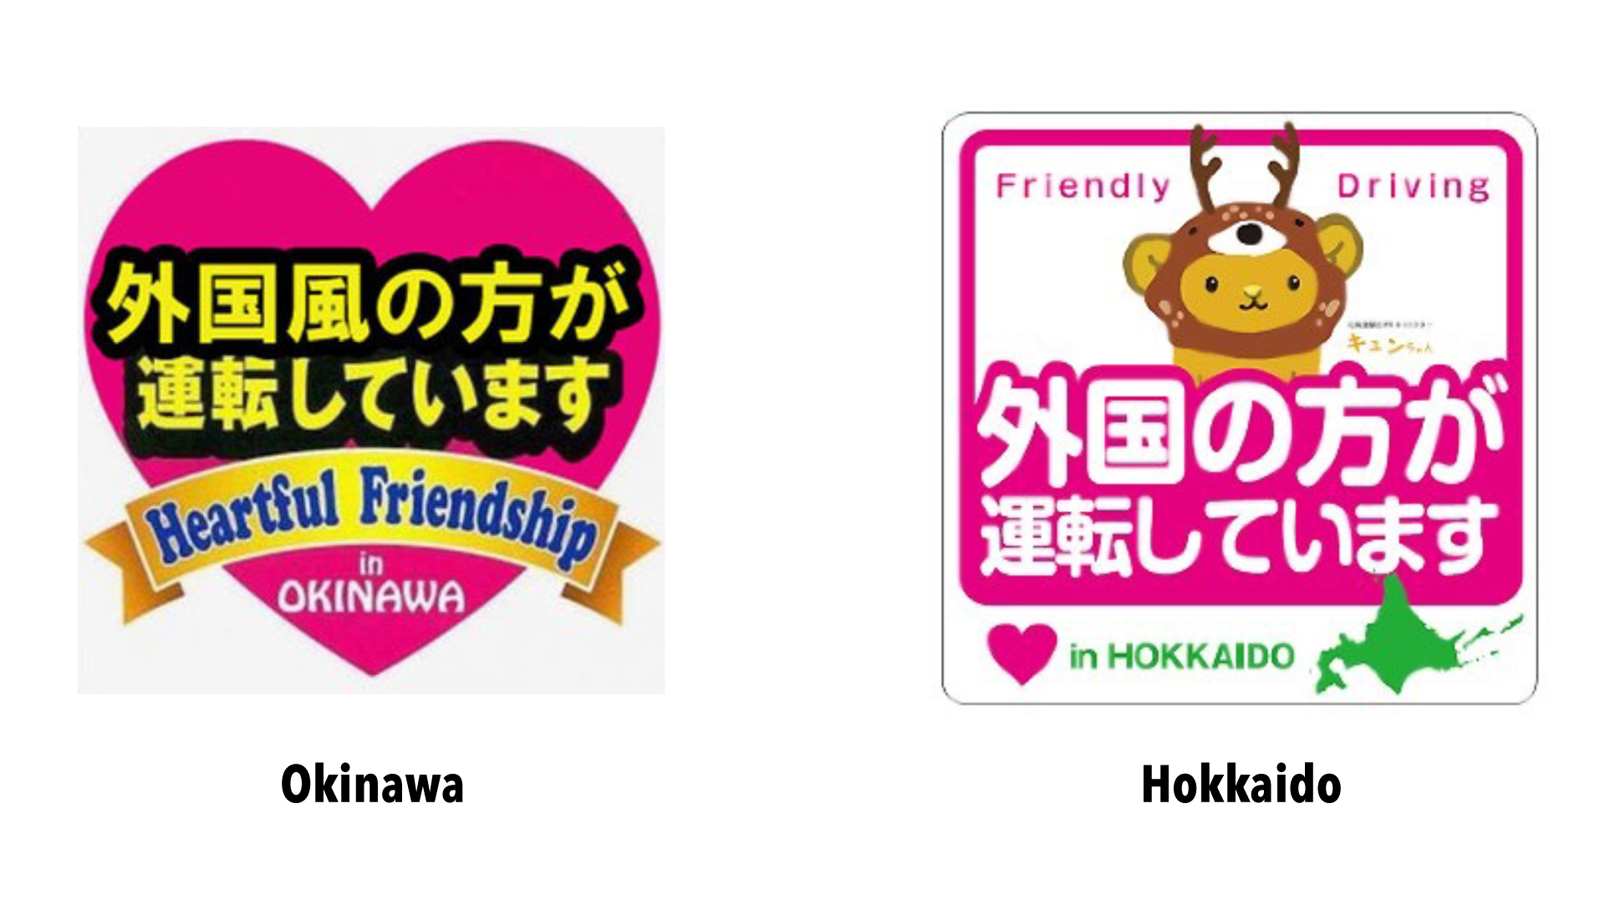 Die Touristen-Markierungen in Okinawa und Hokkaido.